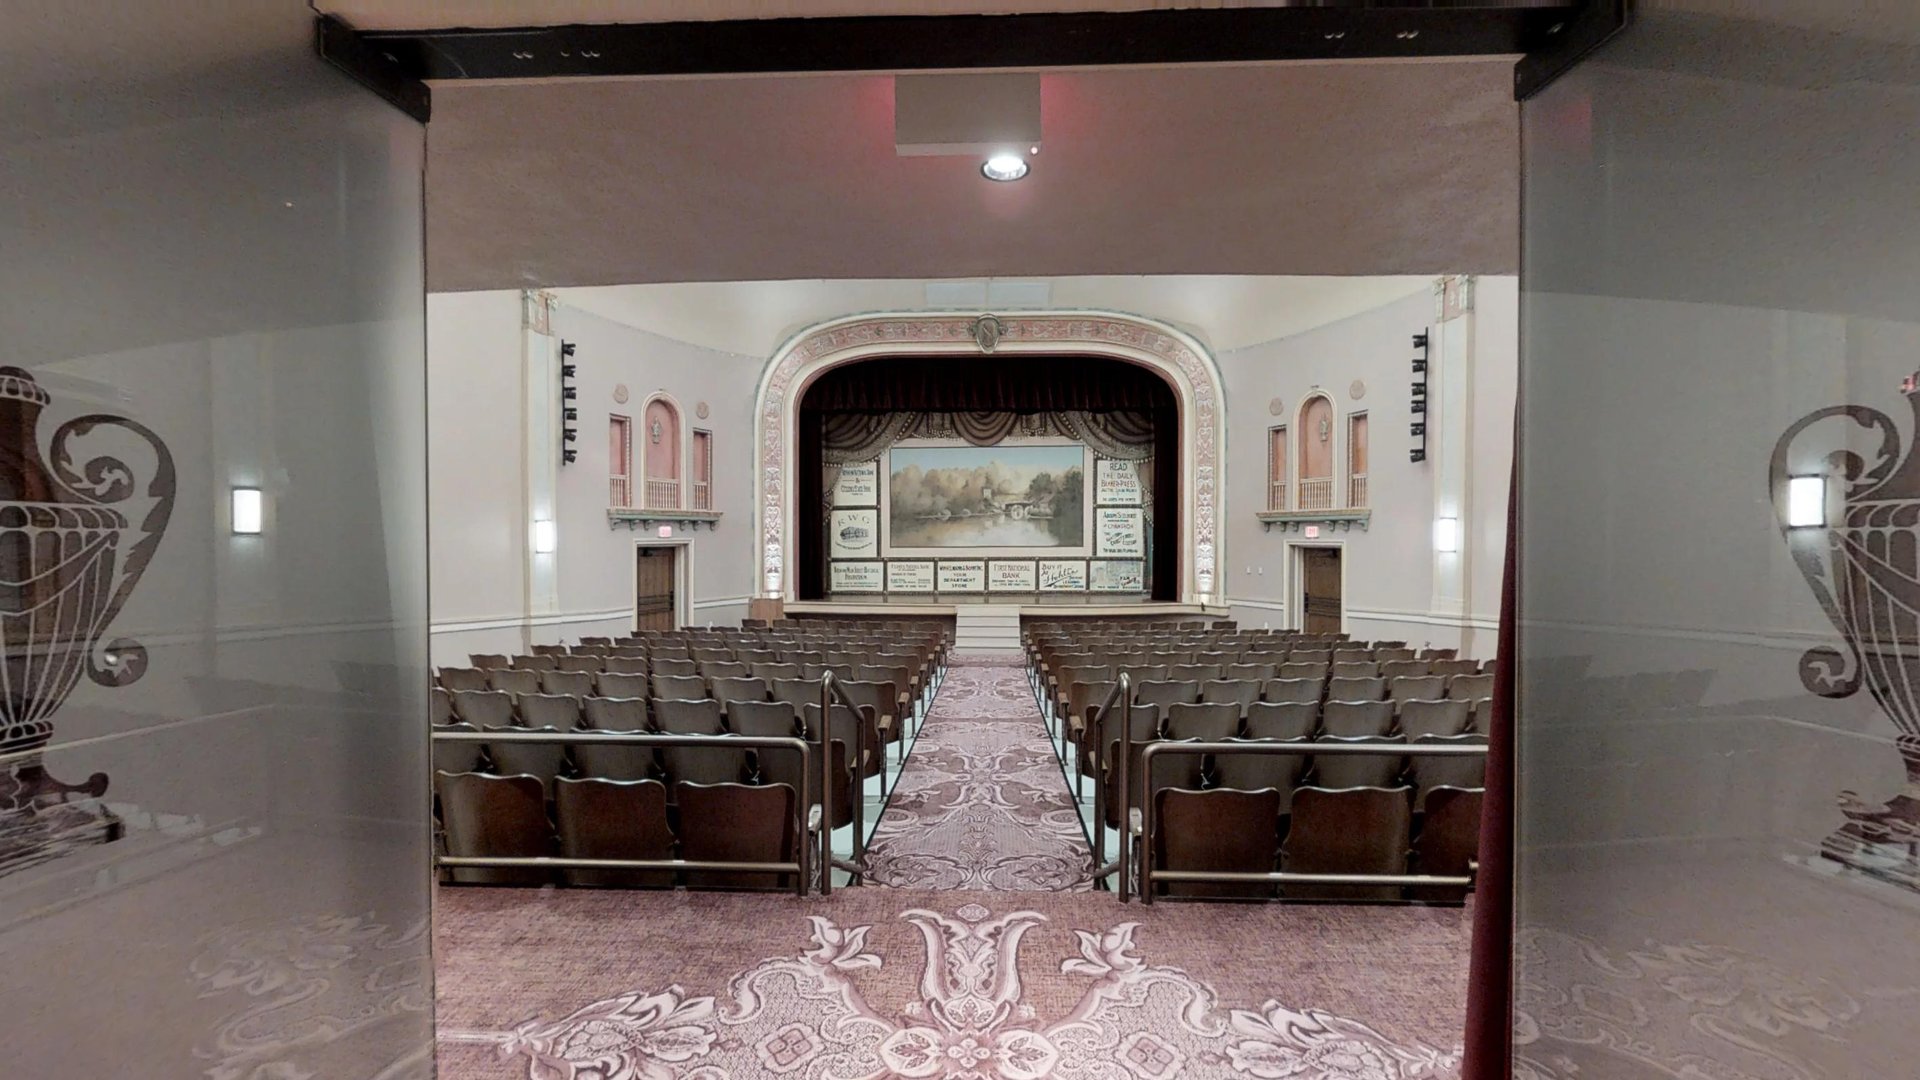 Barnhill Center & Simon Theater - Brenham, Texas - Matterport 3D Showcase